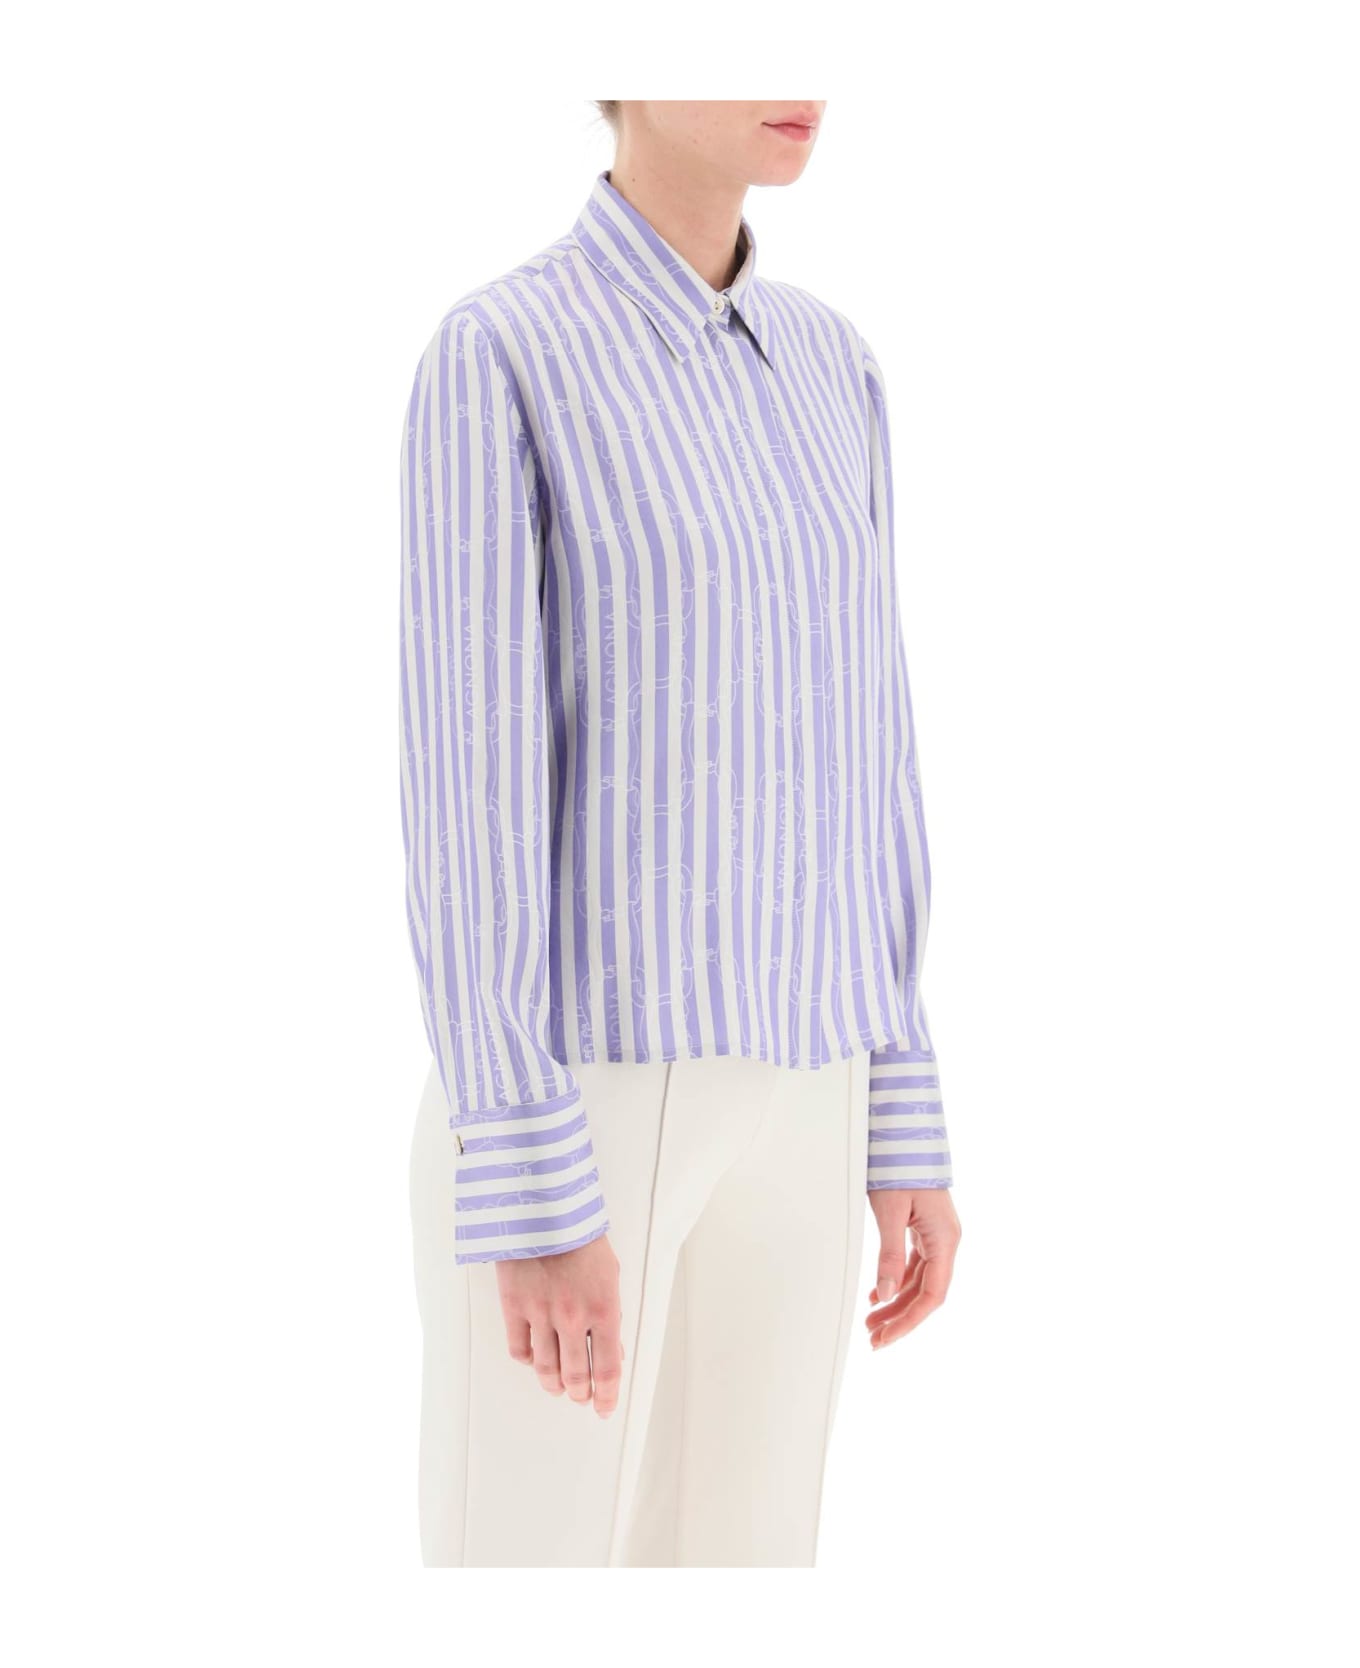 Agnona Striped Shirt With Ribbon Motif - PRINCE (White)